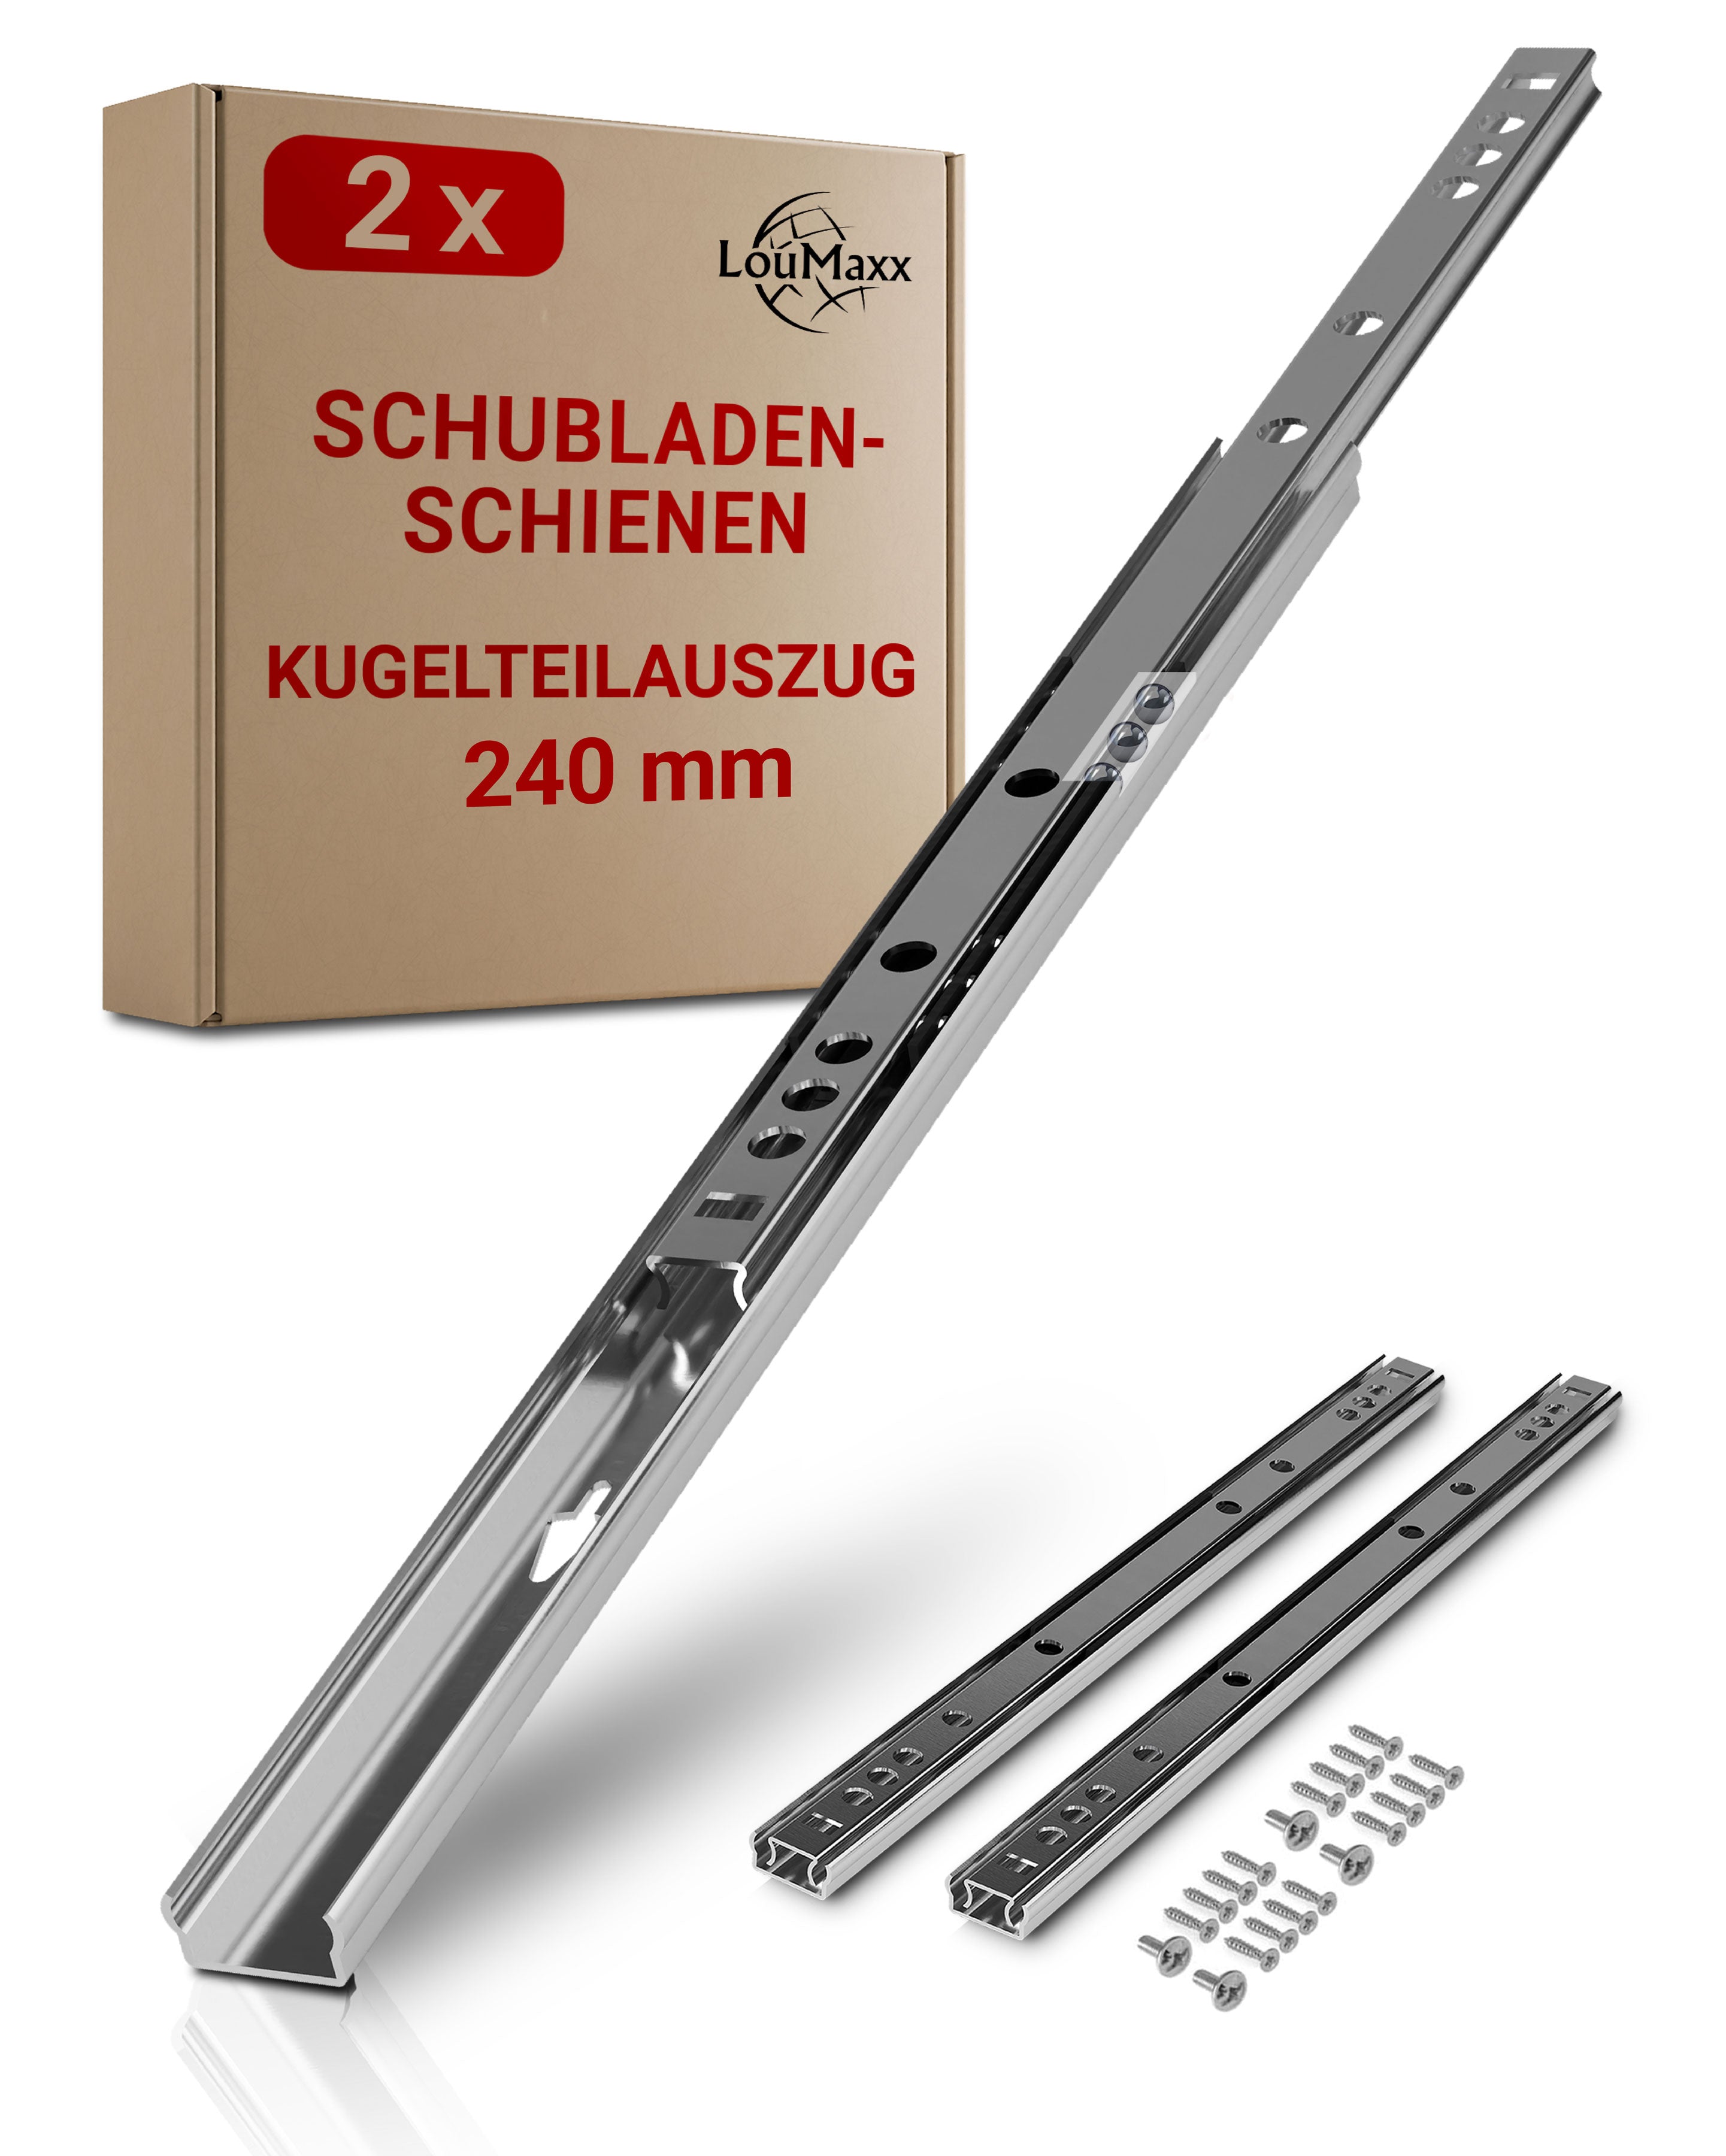 LouMaxx Kugelauszug 2er Set (1 Paar) Schubladenschienen 240 mm / 17mm Nut Schubladenauszug - Schienen für Schubladen - Schubladen Schienensystem